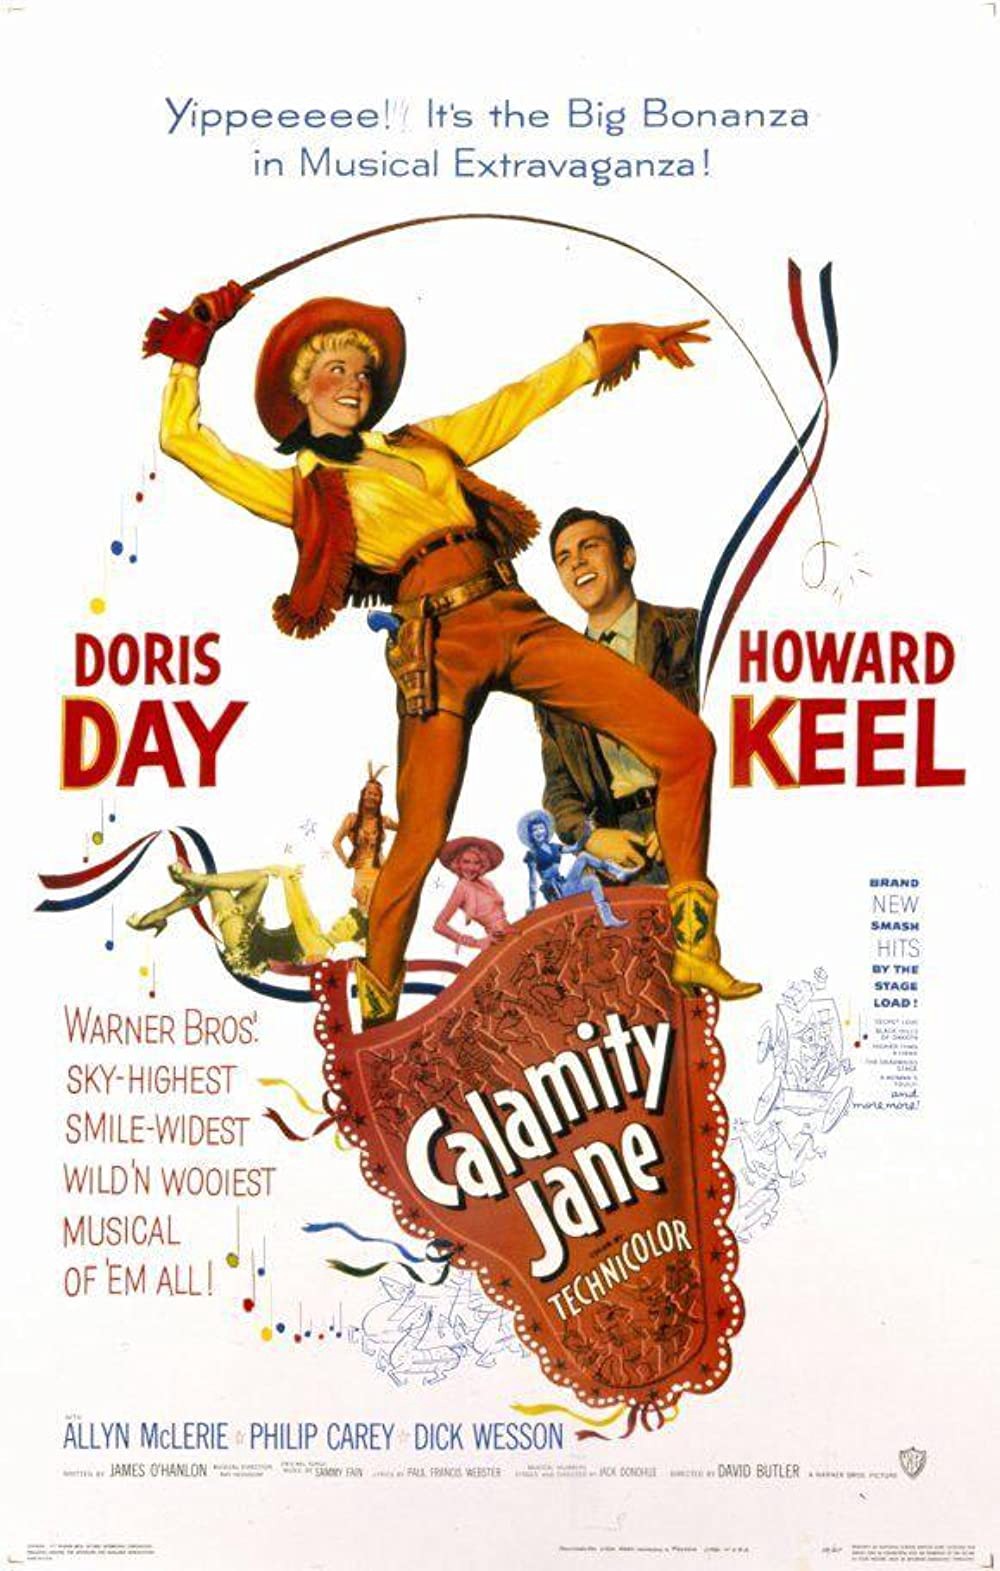 Calamity Jane (film) Warner Bros pic